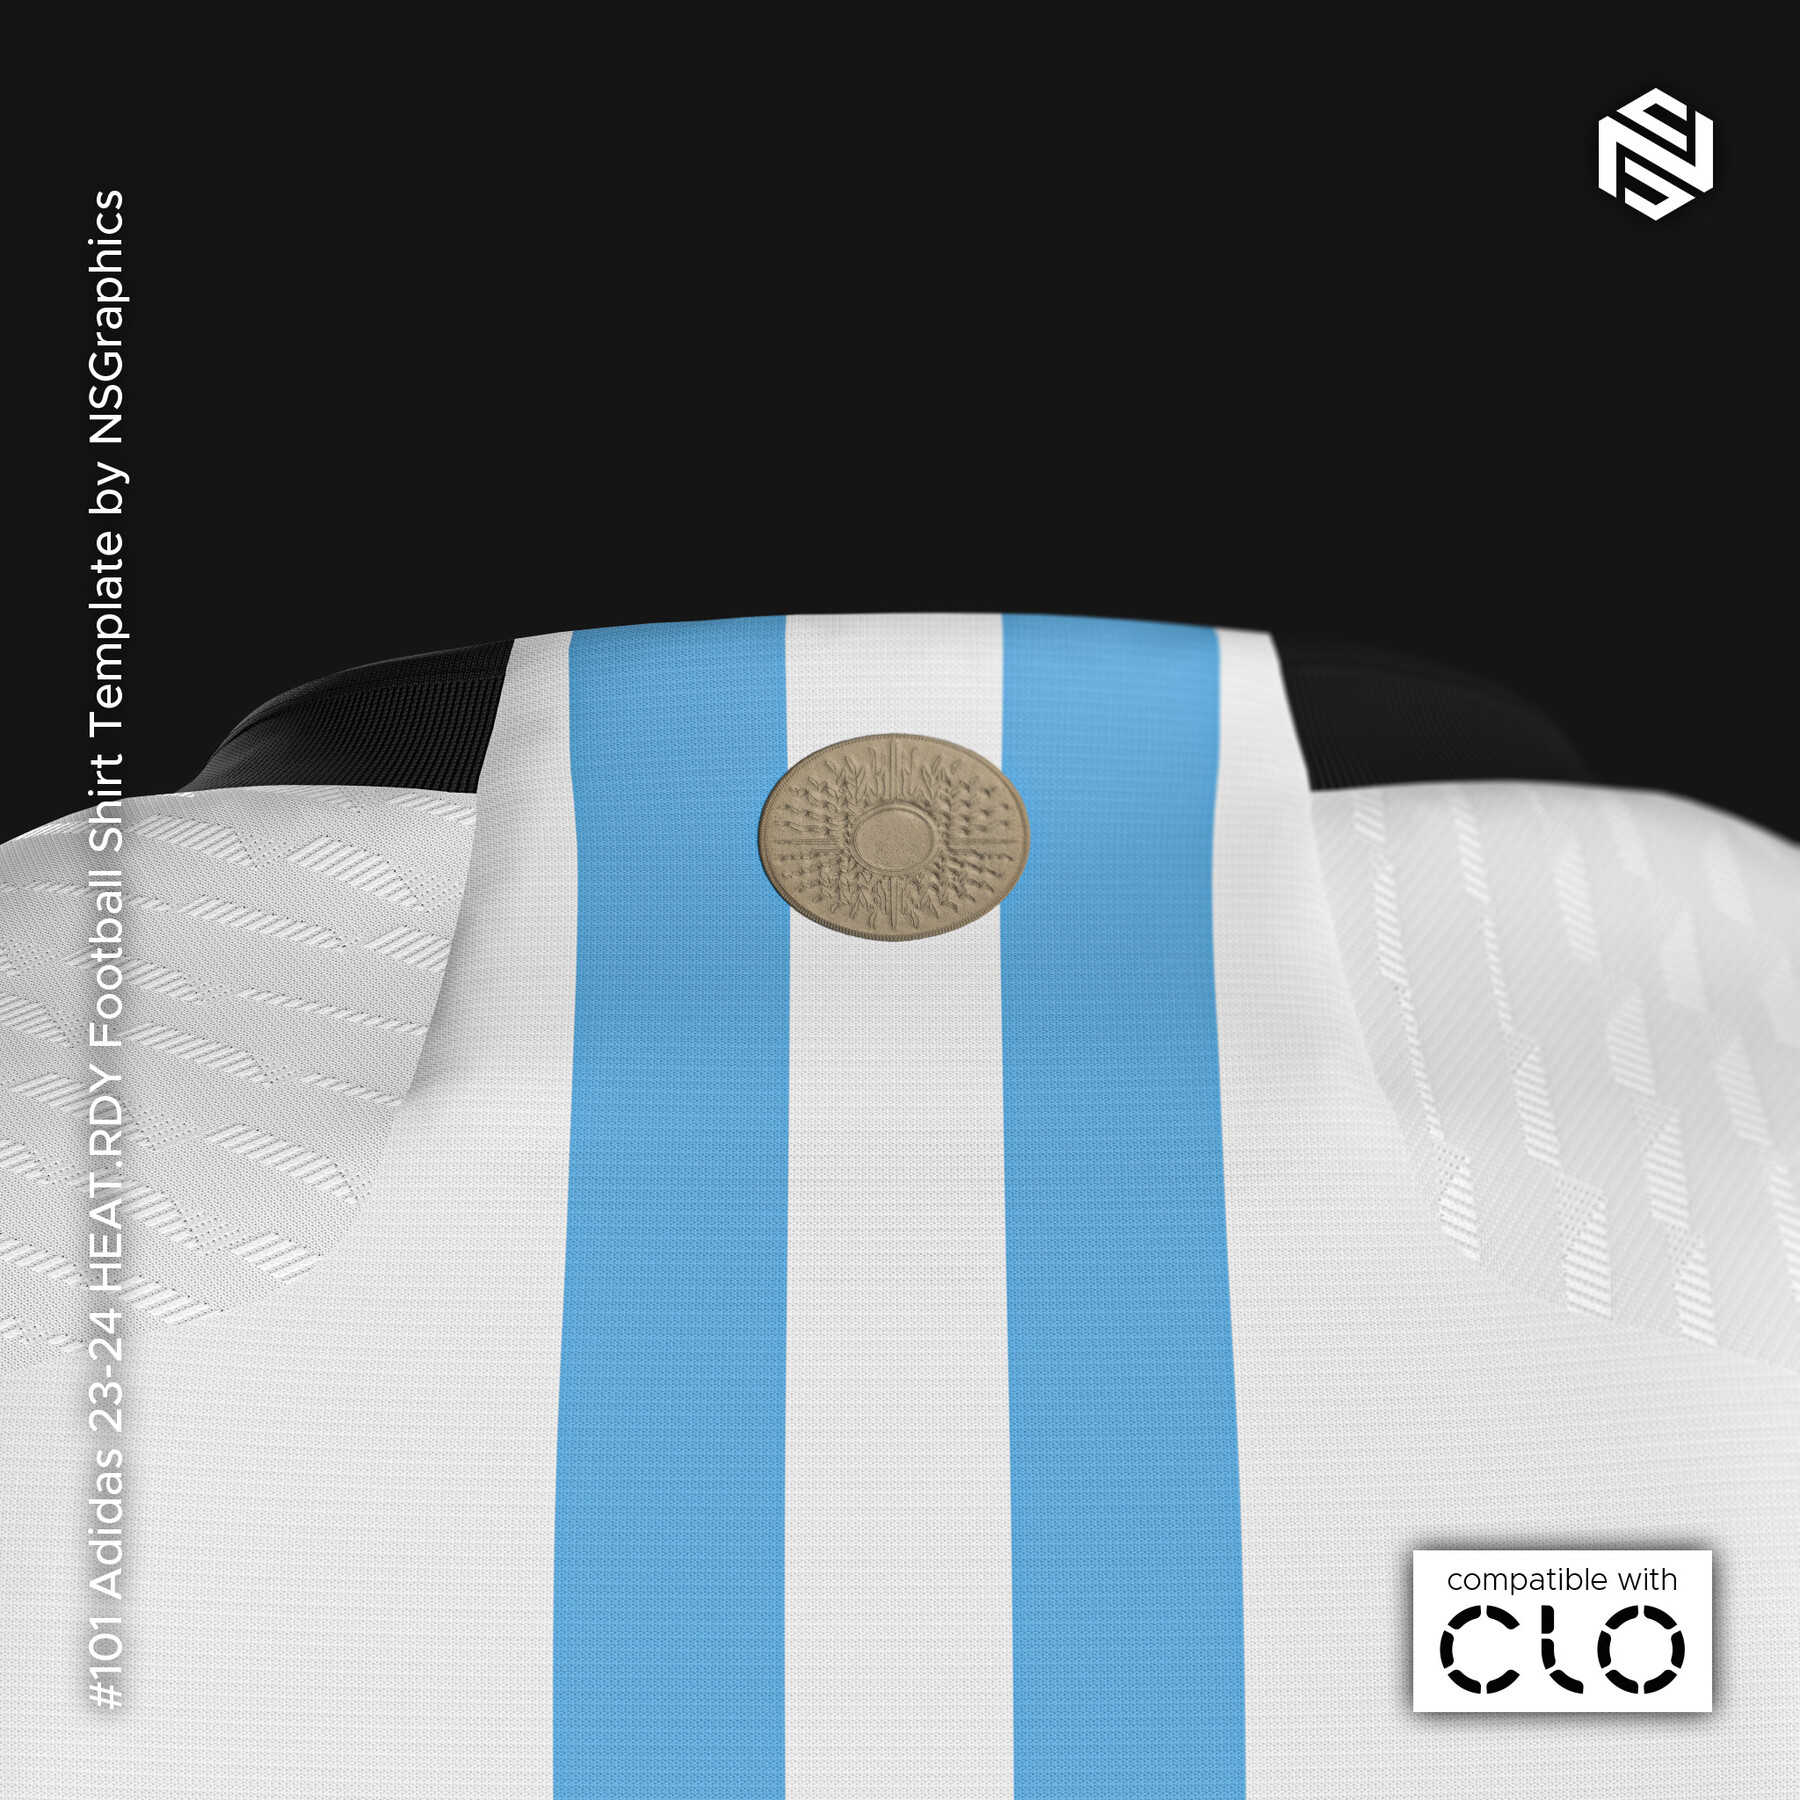 ArtStation - Manchester City jersey in the locker room